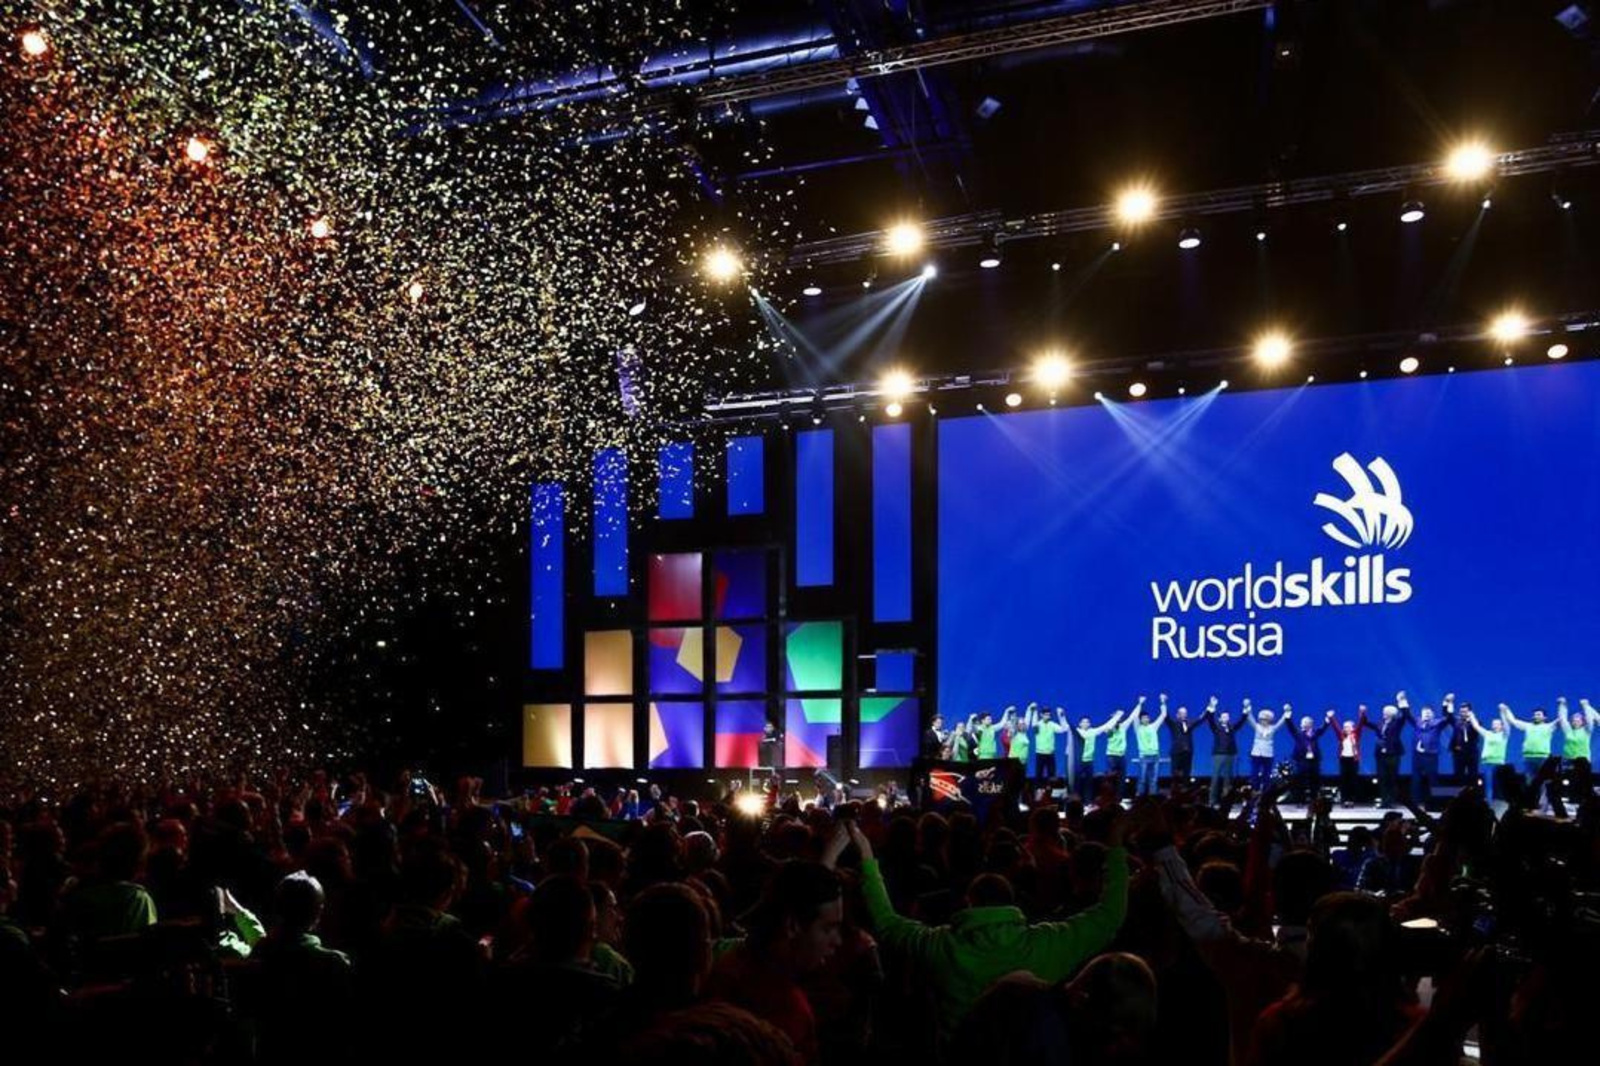 Владимир Путин сказал, что финал чемпионата WorldSkills  в Башкортостане будет более массовым, чем мировой чемпионат в Казани